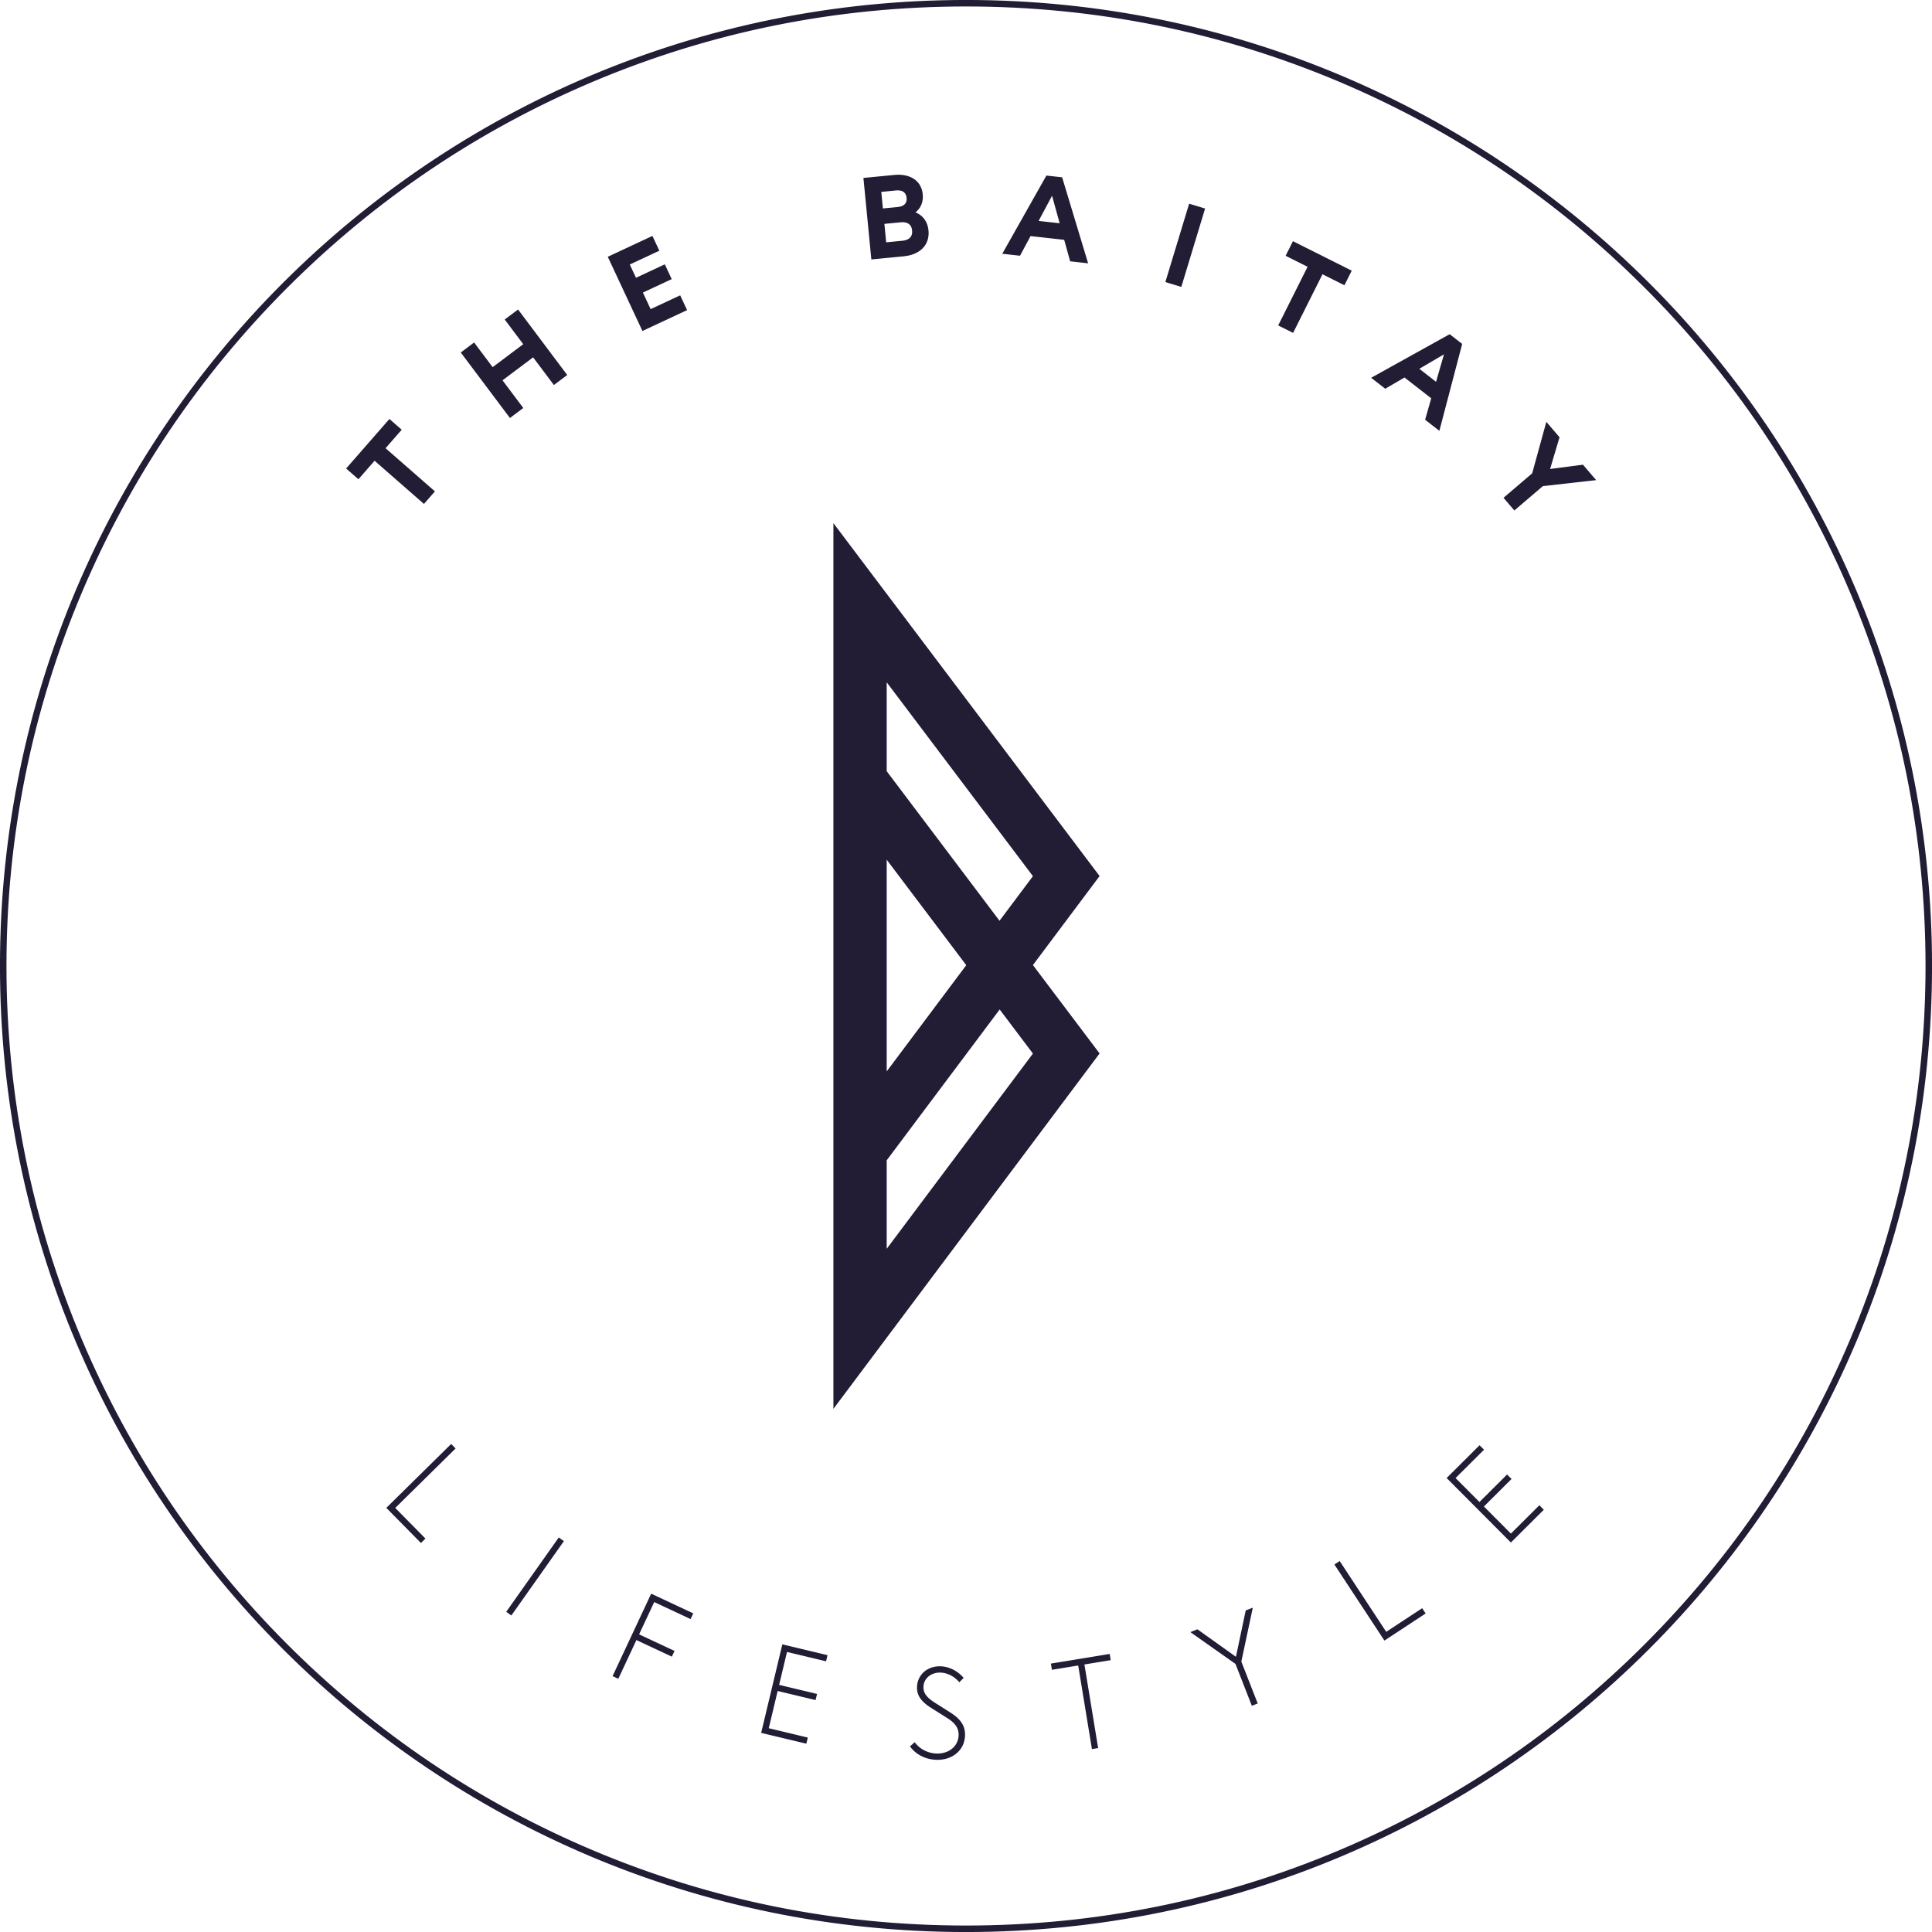 The Baitay